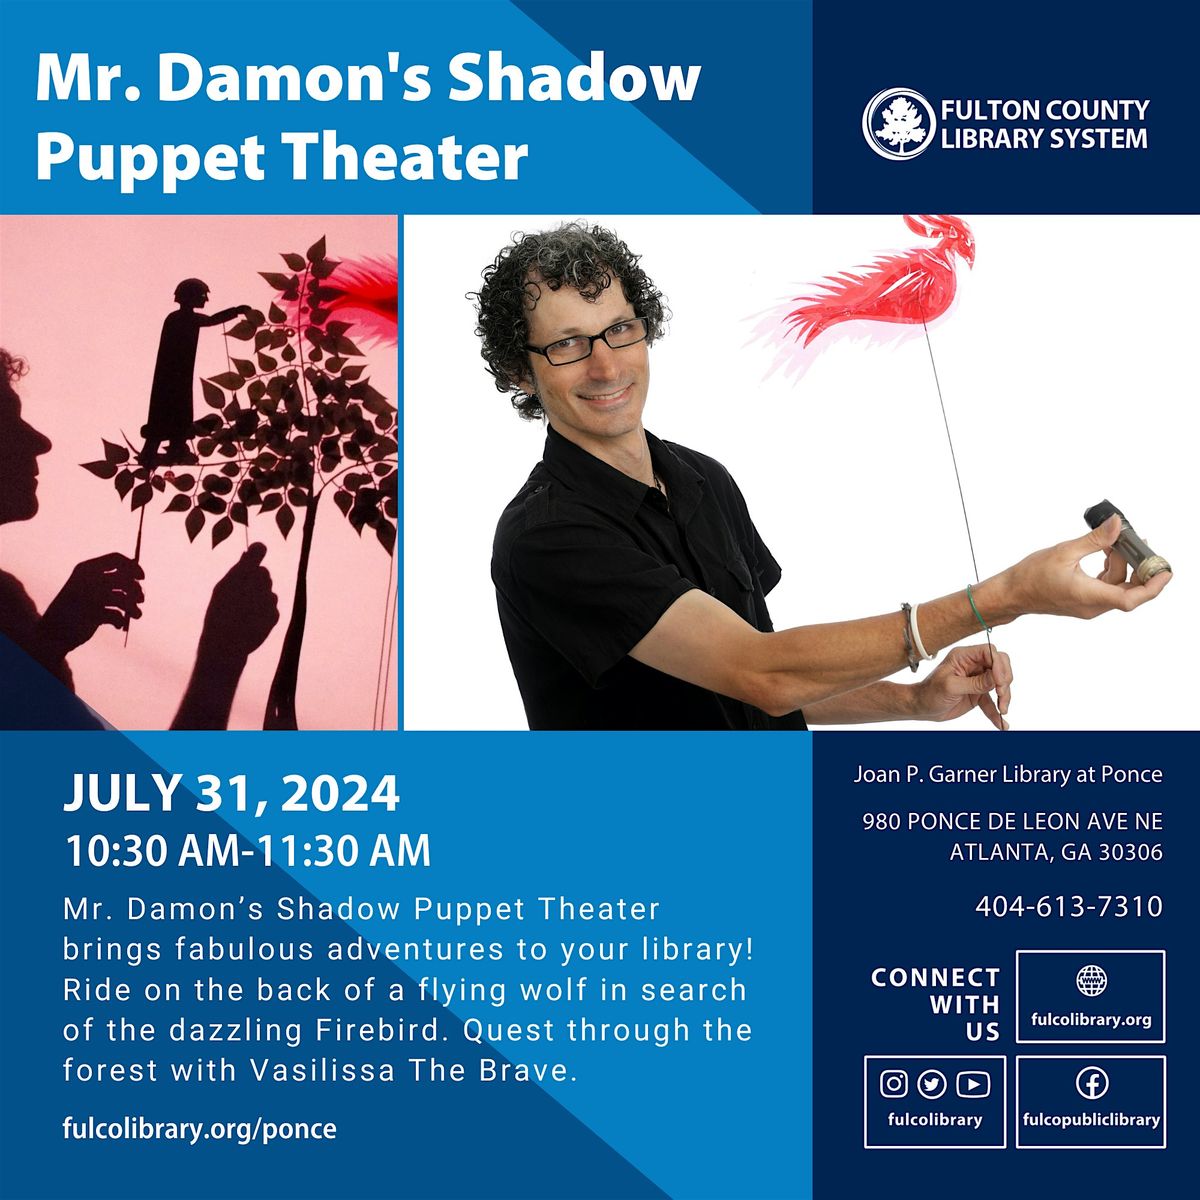 Mr. Damon's Shadow Puppet Theater